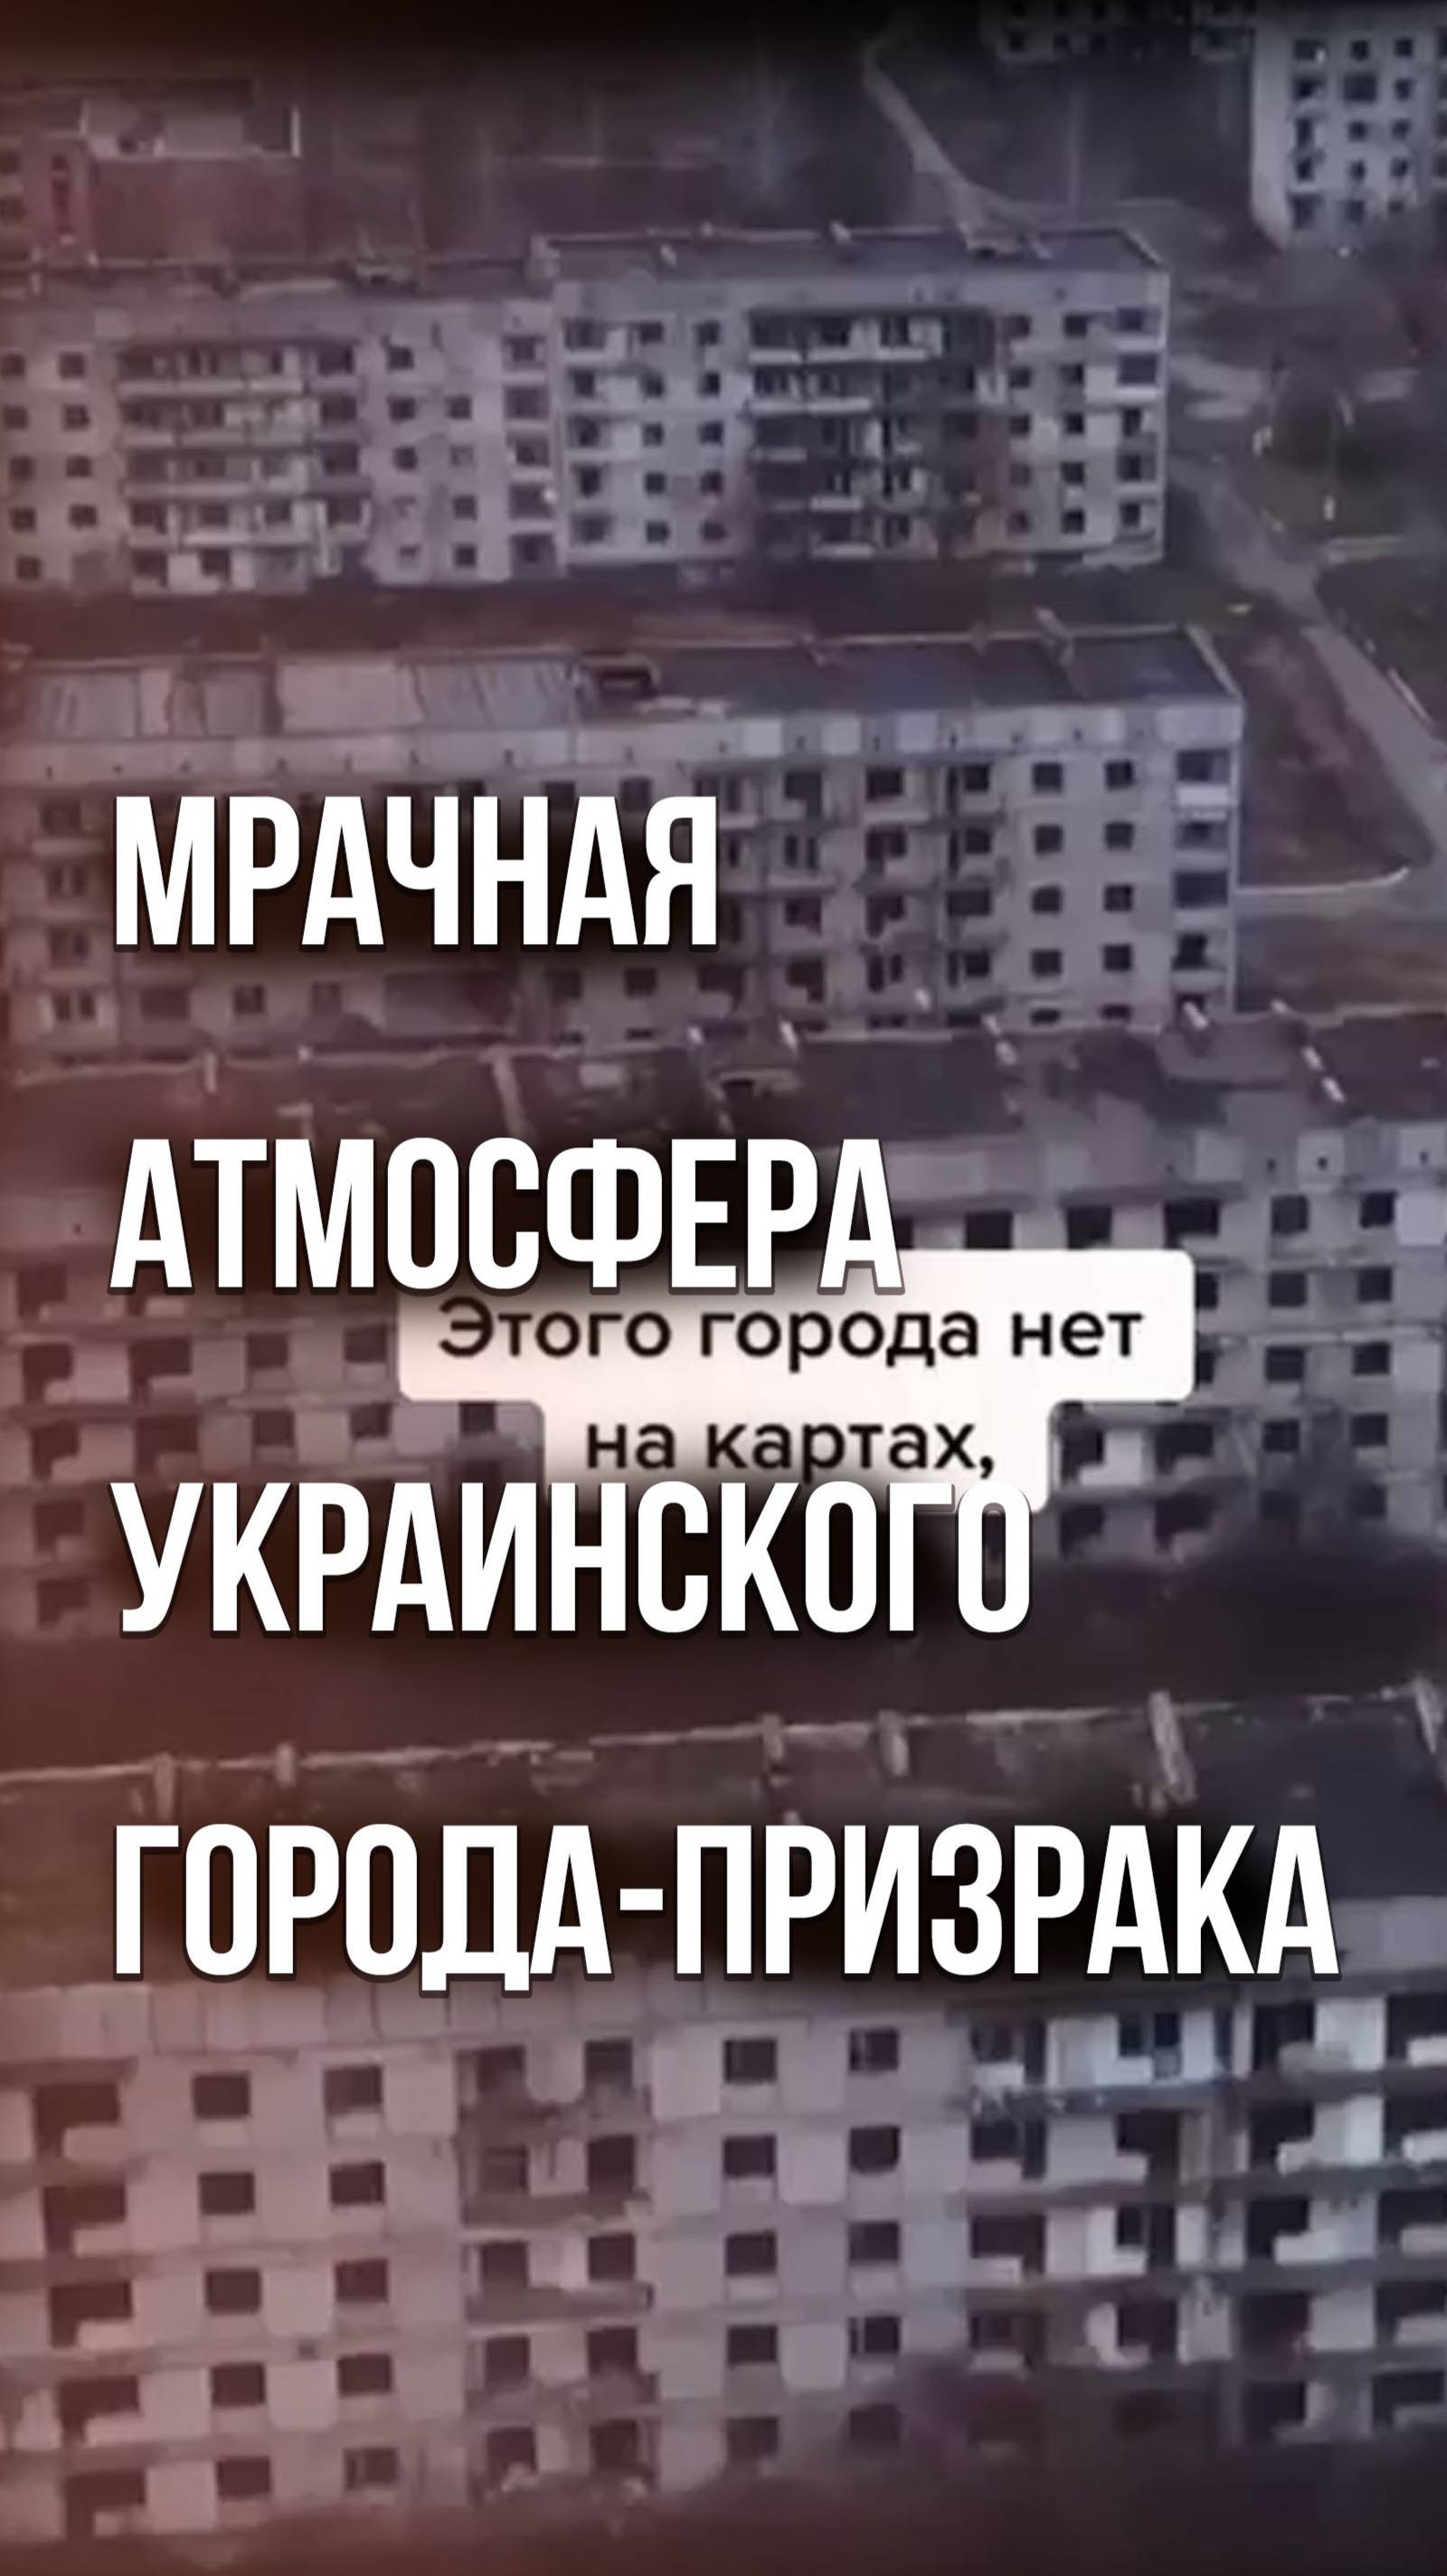 Война ни при чём: смотрите, как вымирают города Украины и в каких жутких условиях там живут люди